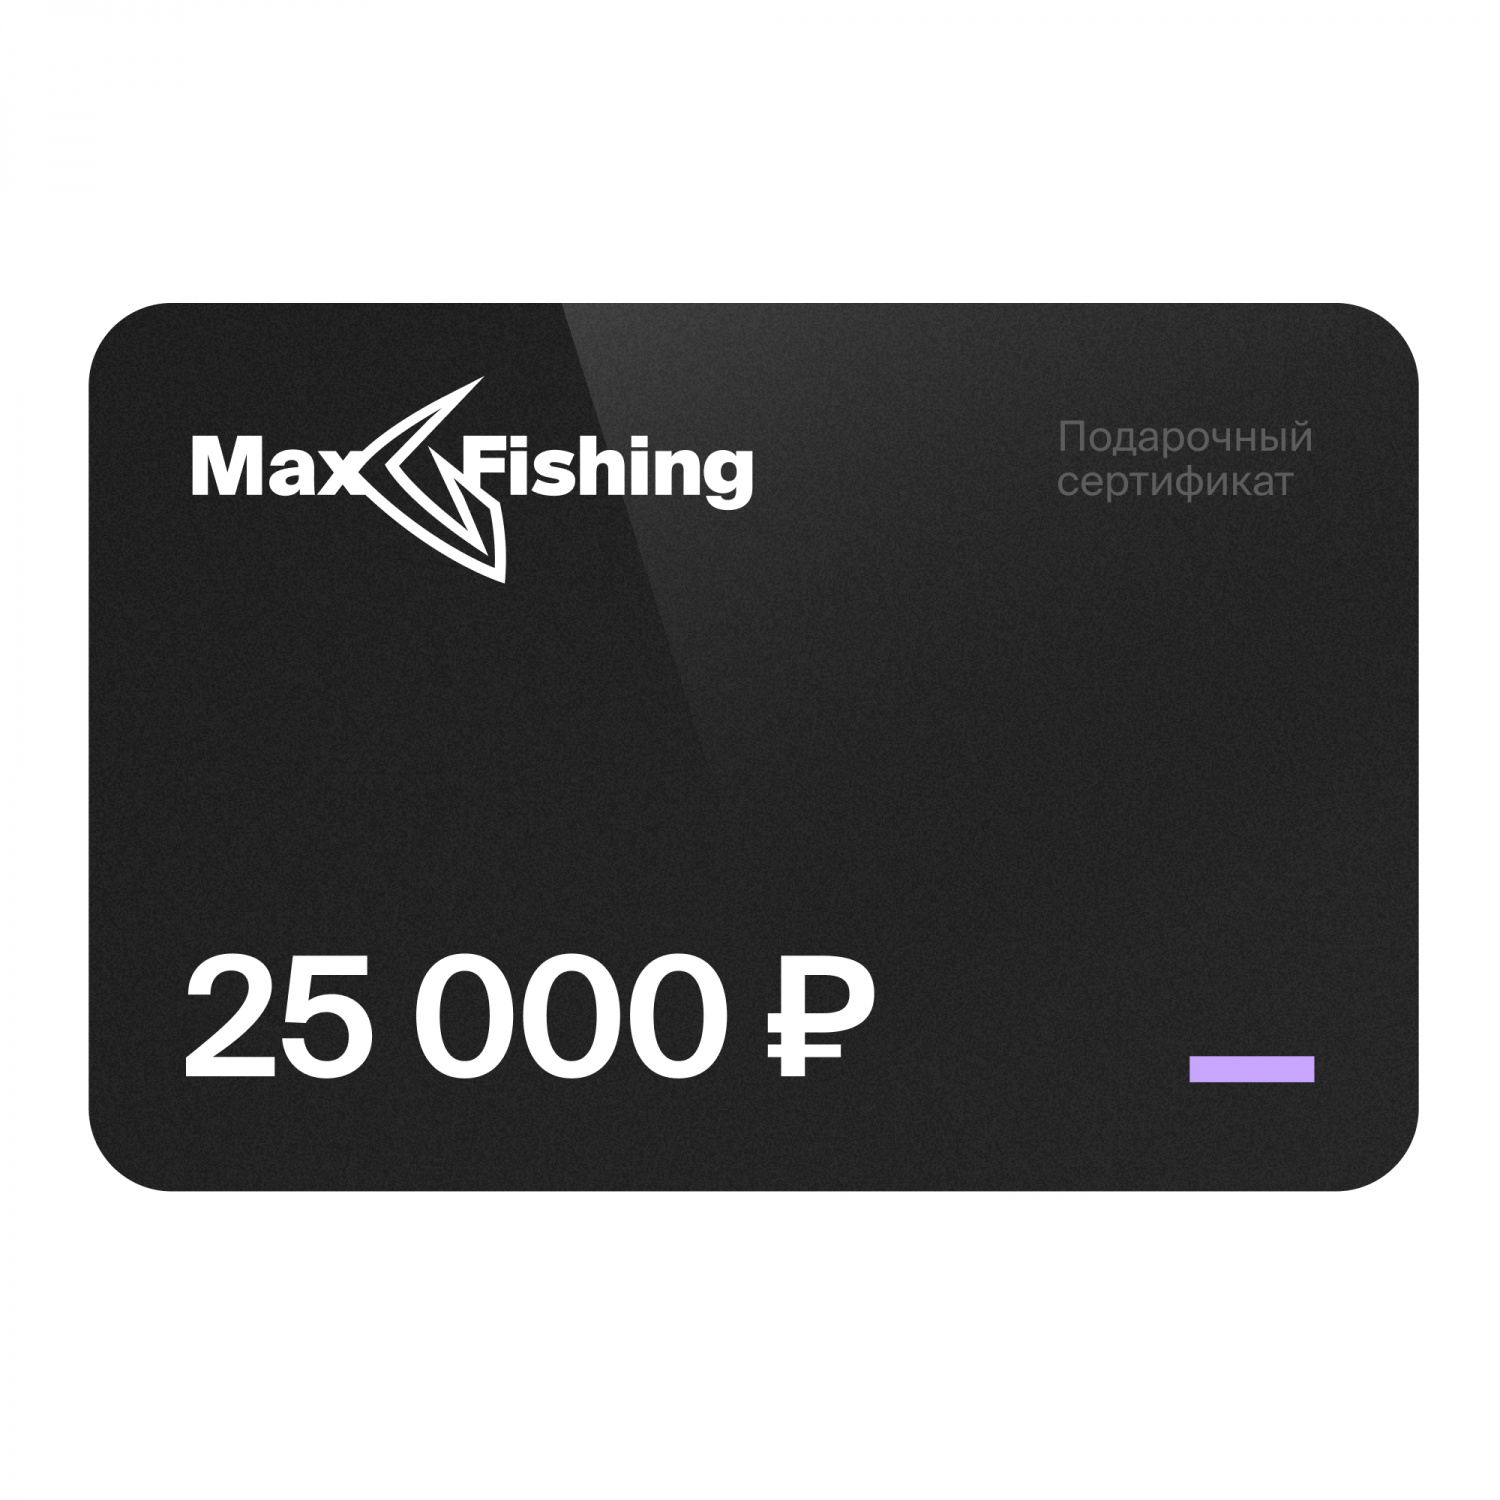 Подарочный сертификат MaxFishing 25 000 ₽ подарочный сертификат на 50 000 рублей